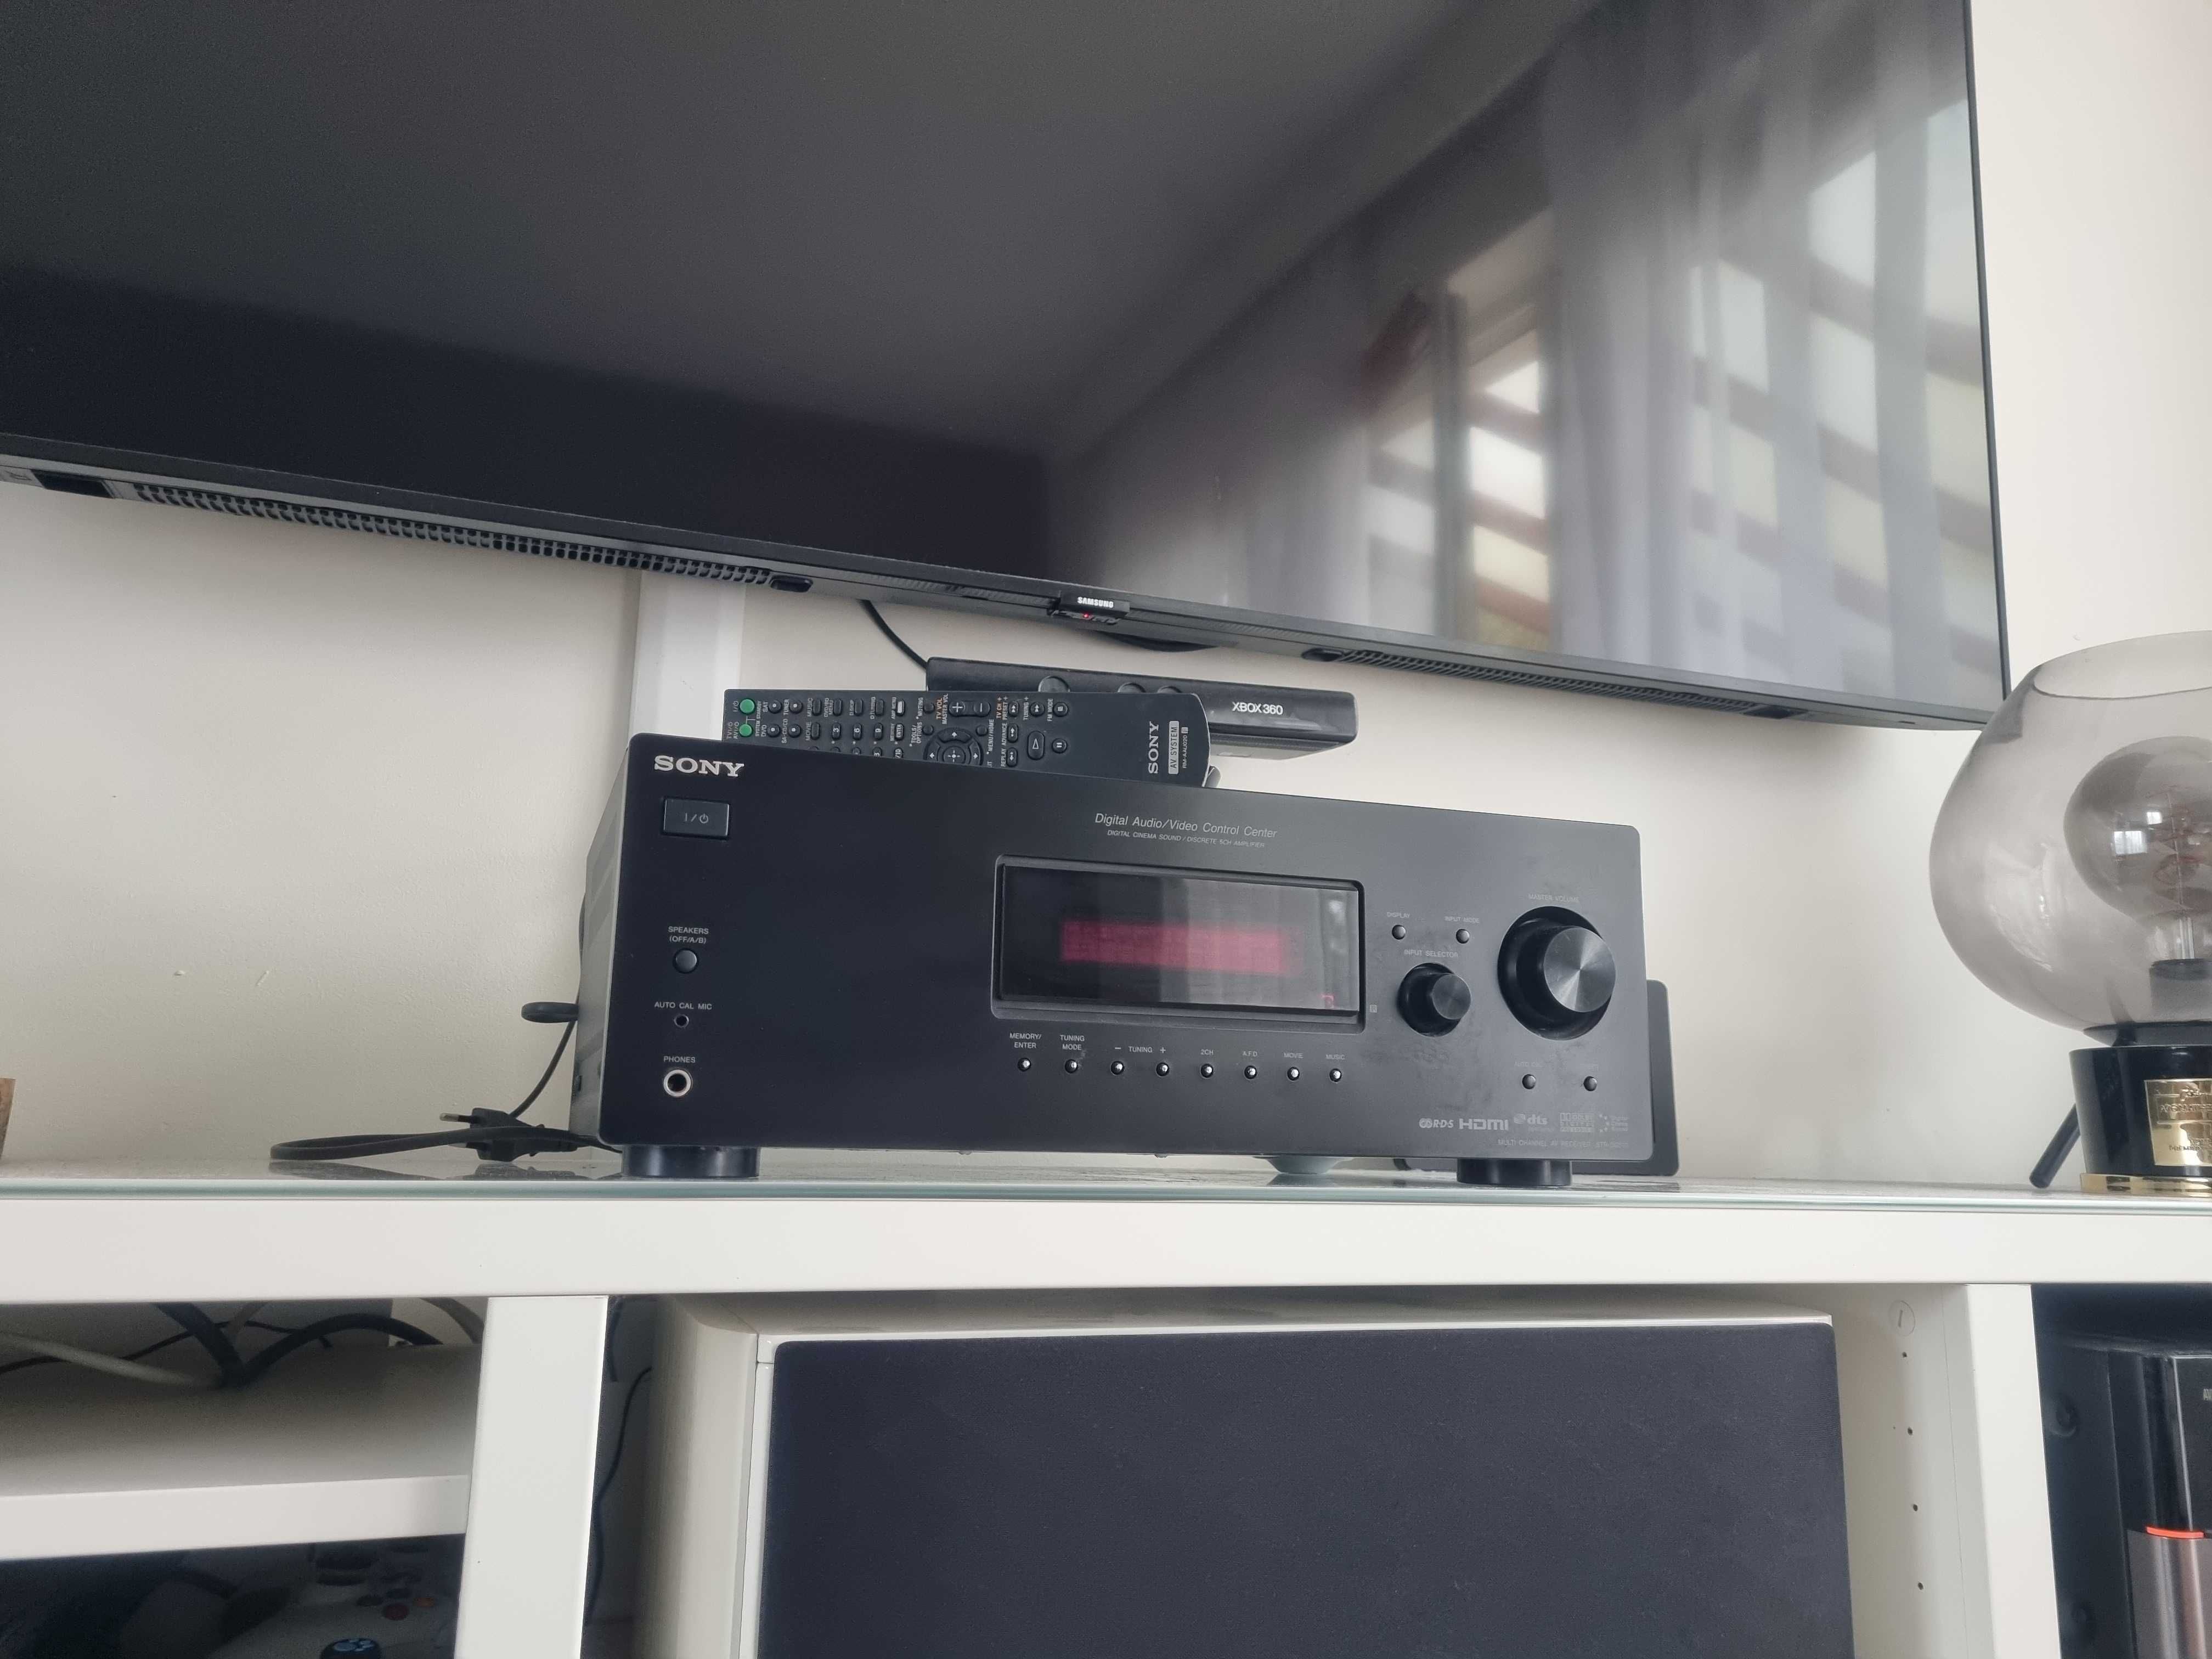 OKAZJA Amplituner wzmacniacz kino domowe stereo Sony str dg 510 hdmi